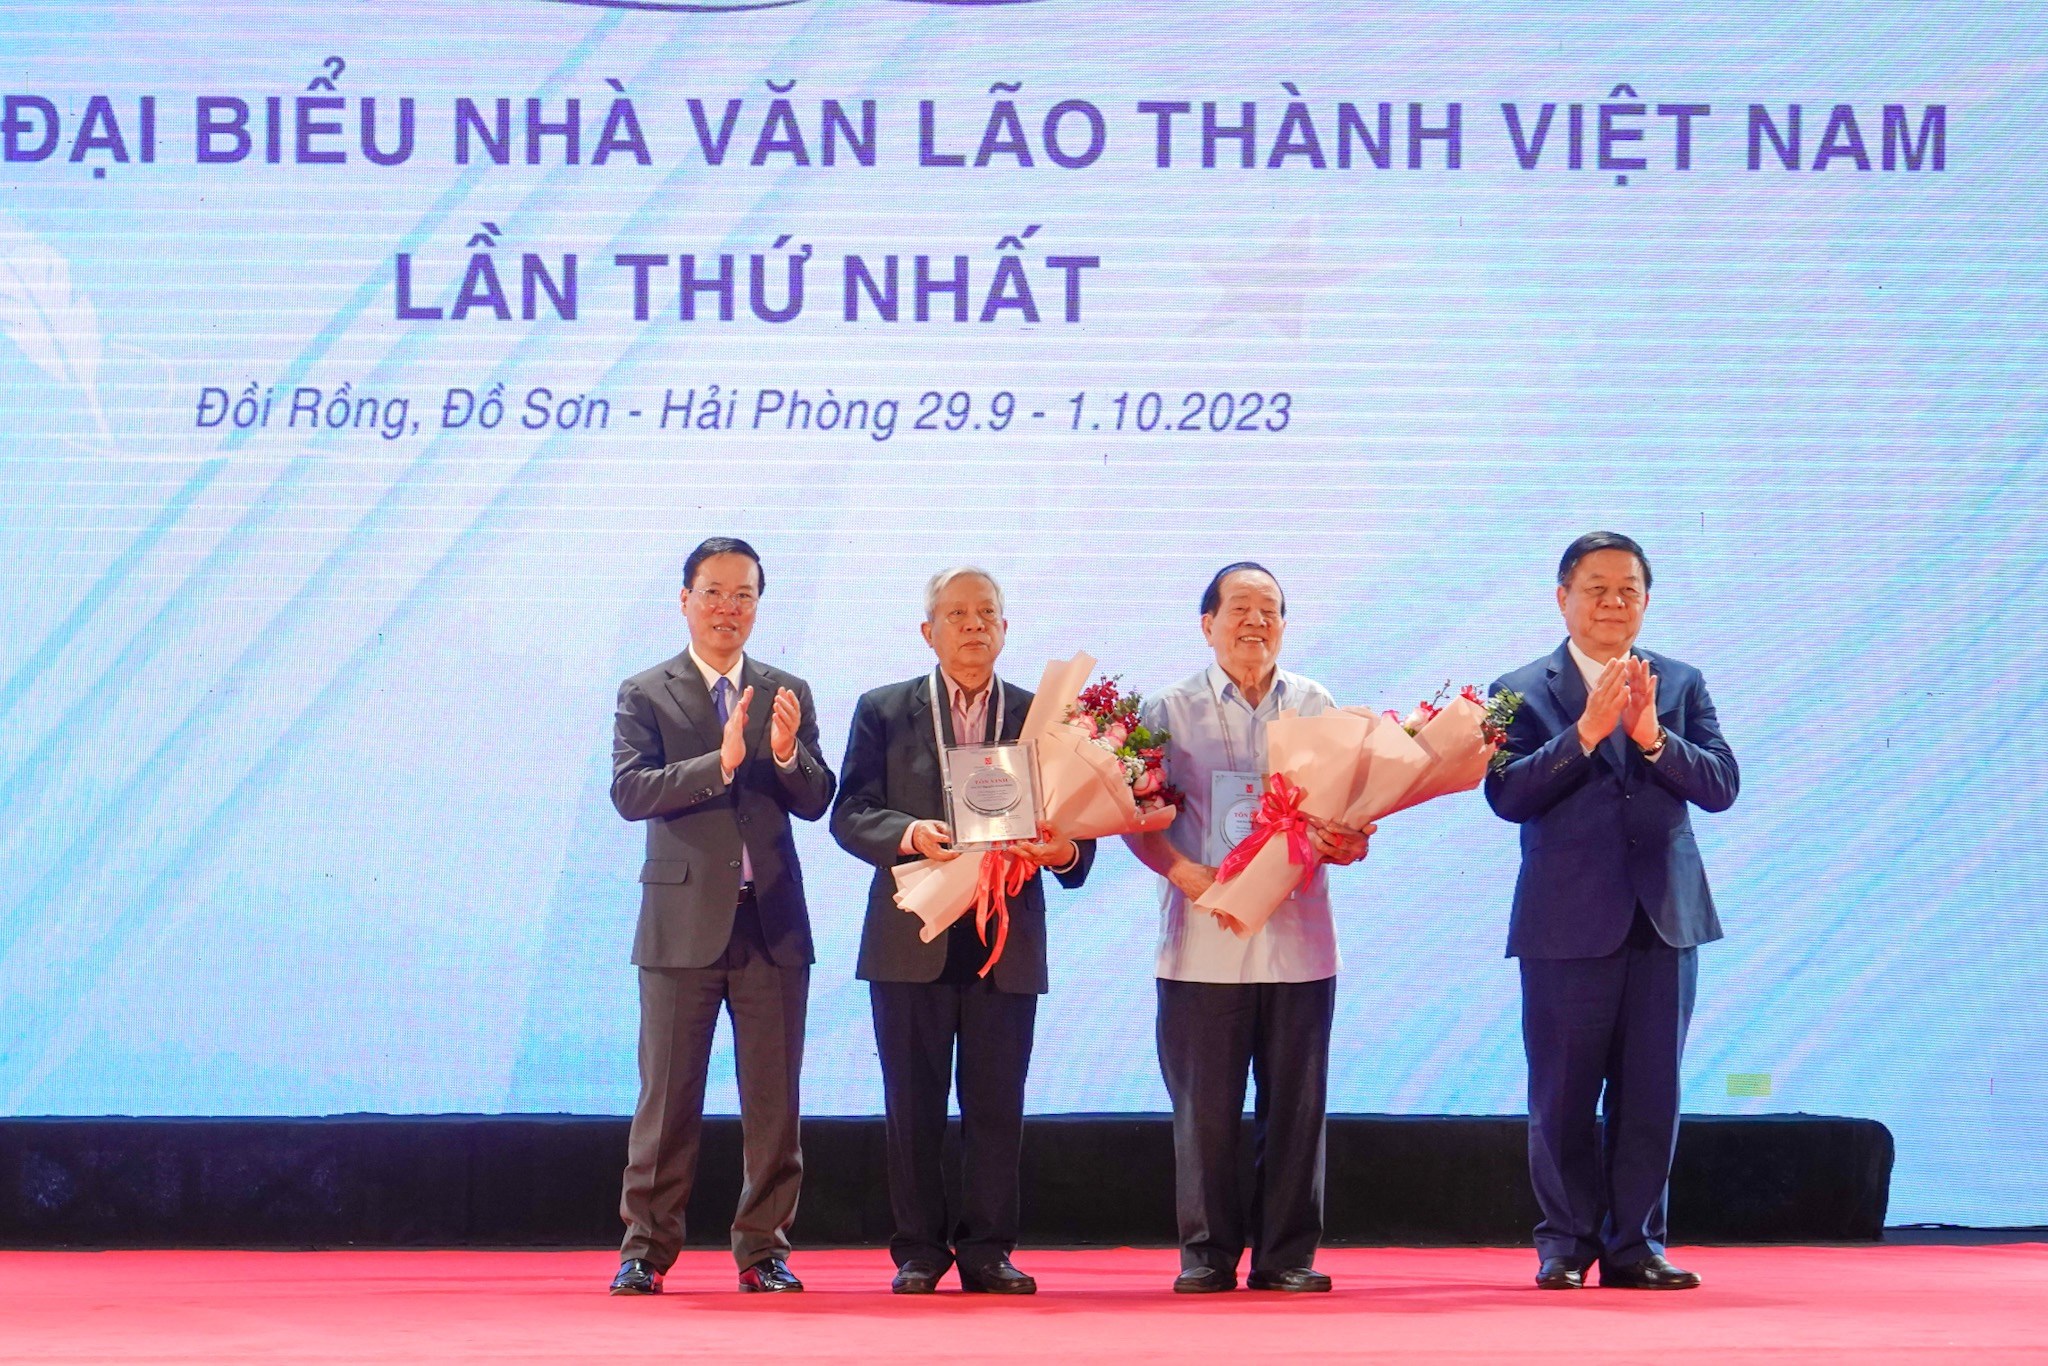 Dòng chảy kỳ vĩ của biển văn học Việt Nam - 8